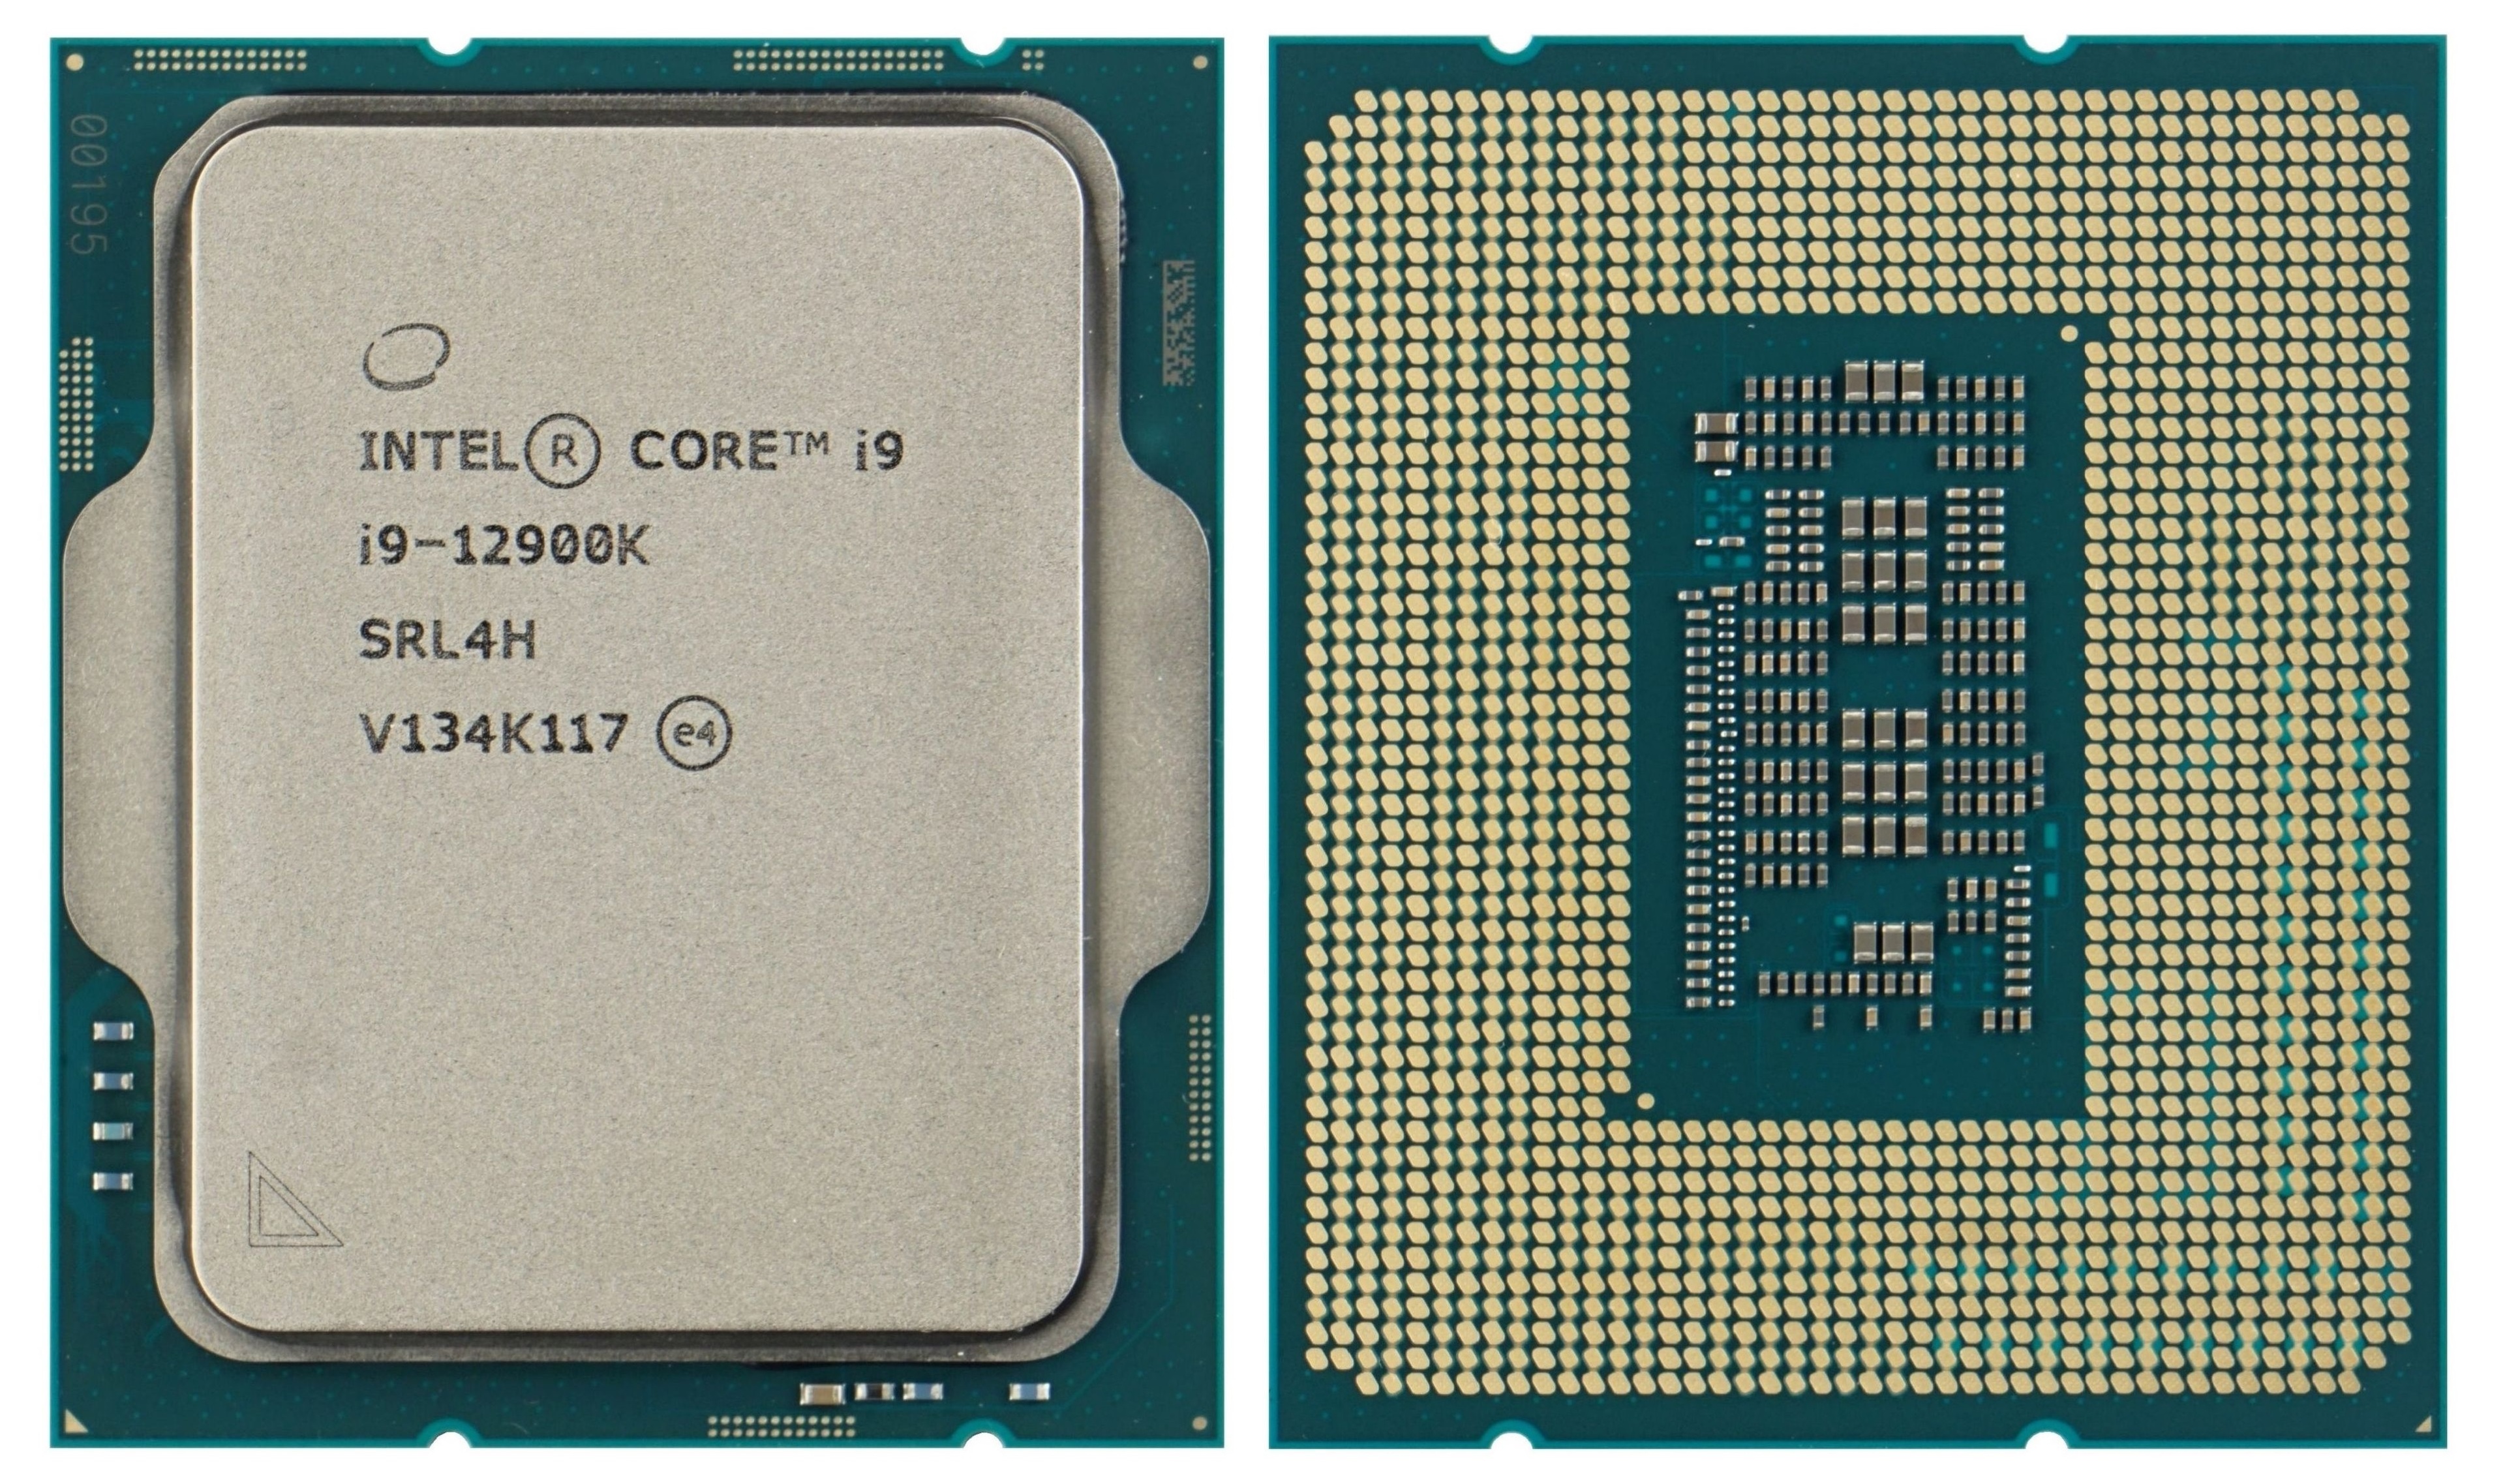 Intel Core i9-12900K megatest: AMD in 2nd place again - HWCooling.net